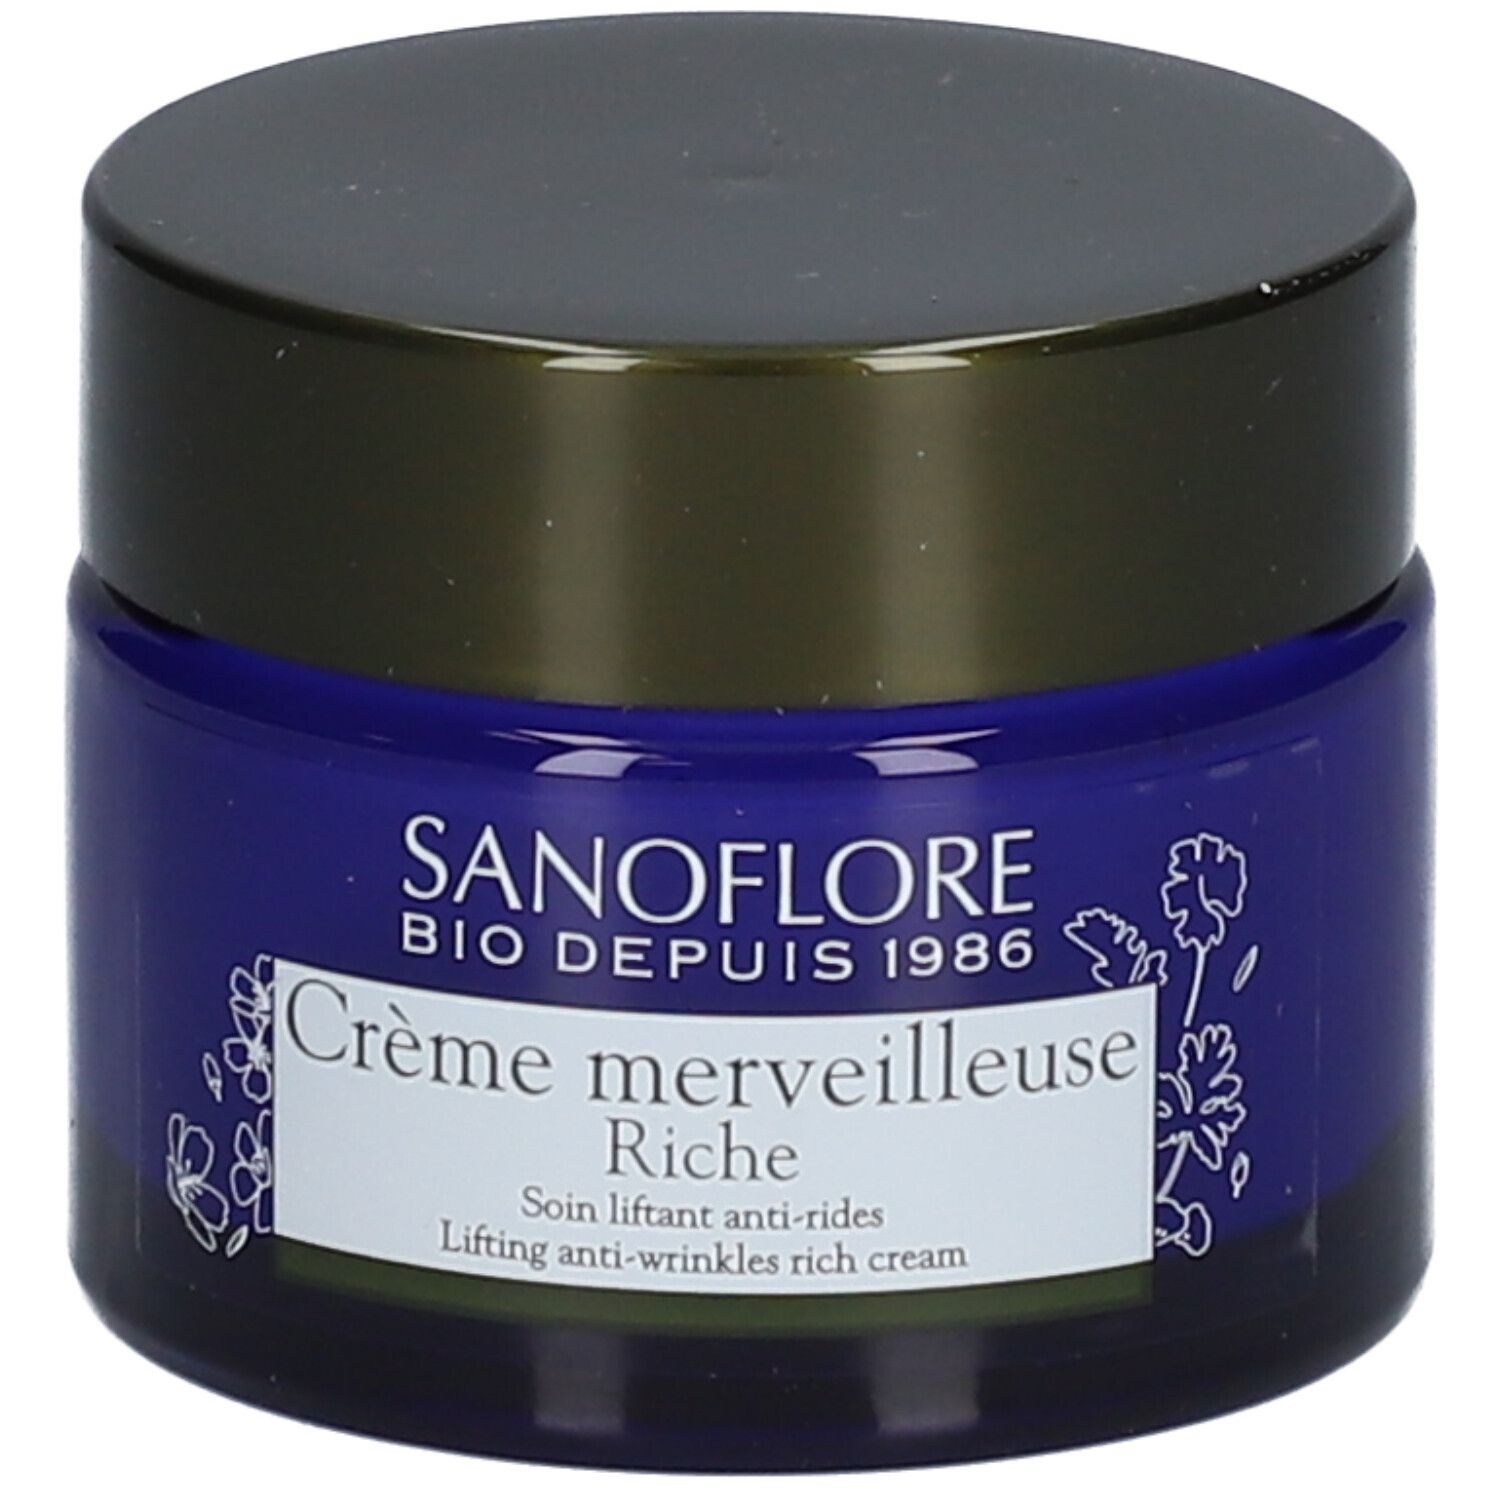 Sanoflore Crème merveilleuse riche 50 ml crème pour la peau